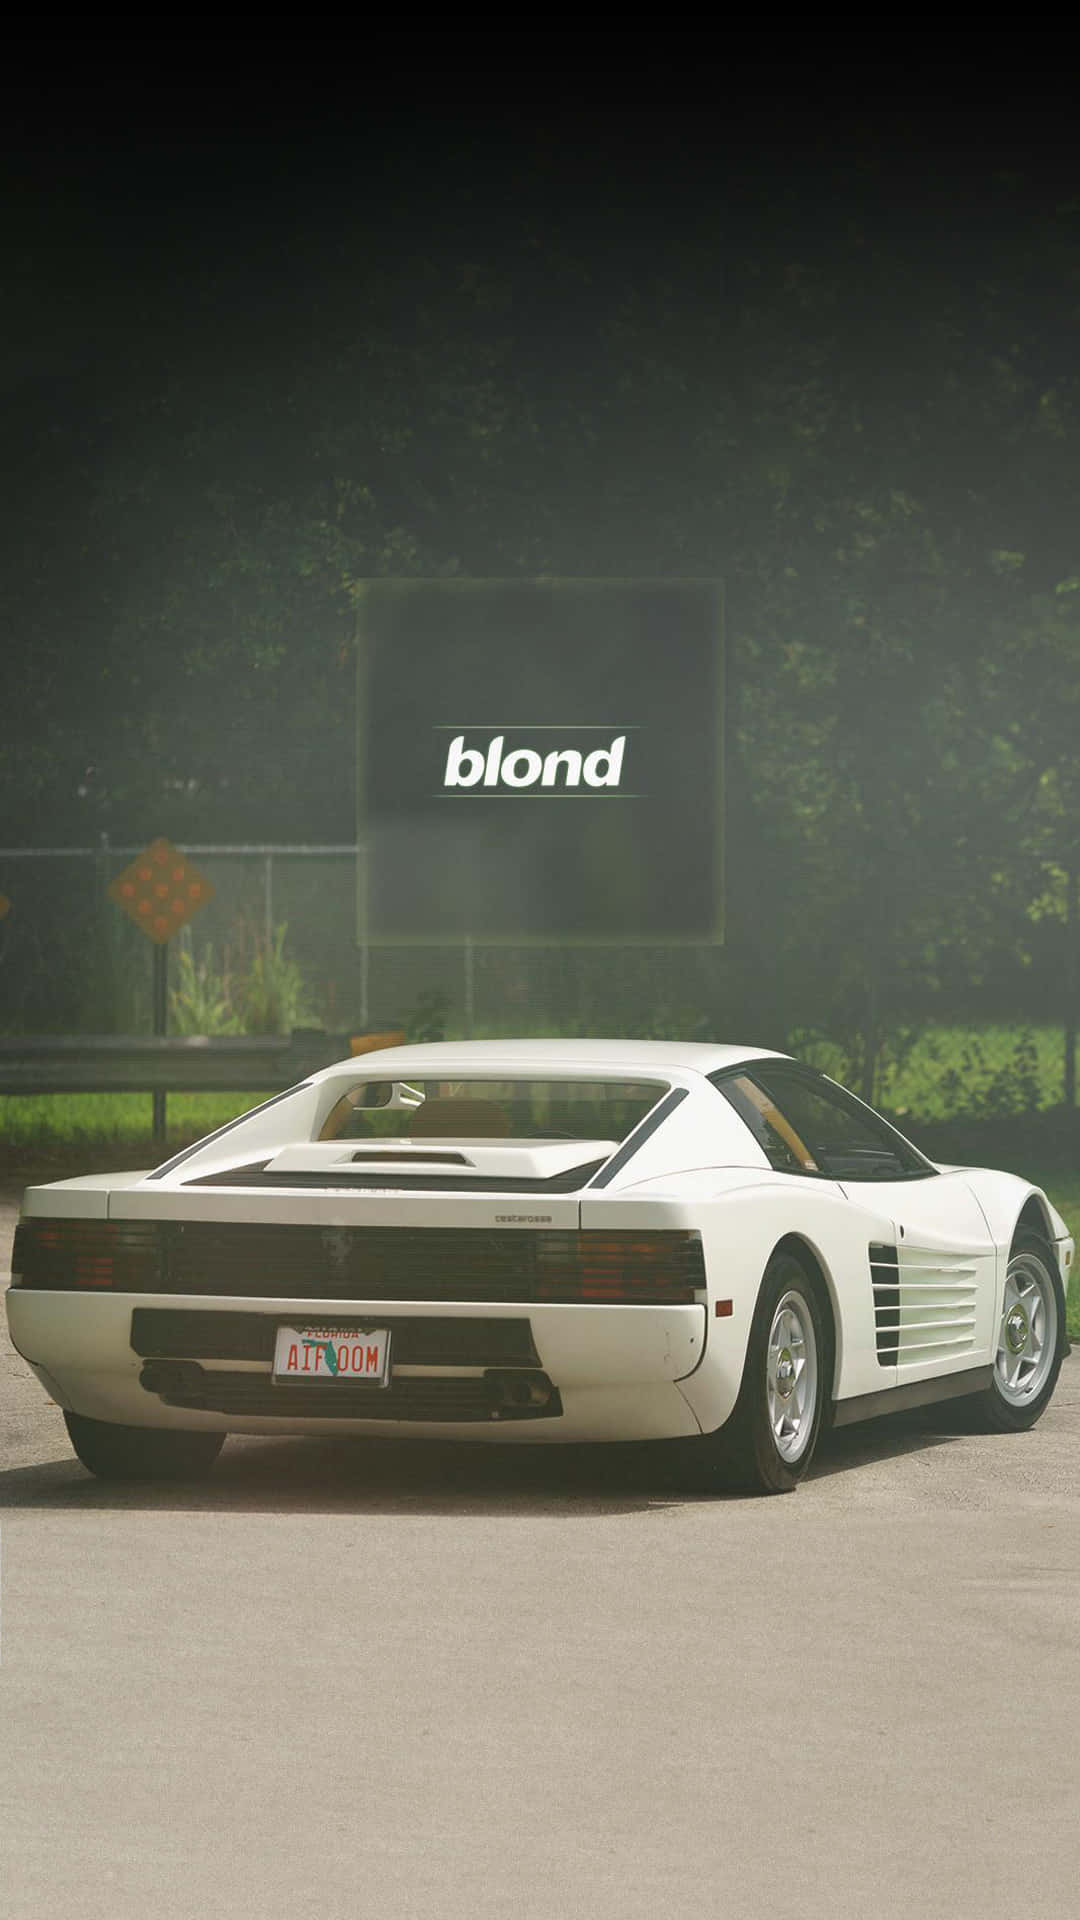 Genießensie Den Perfekten Look In Weiß Auf Weiß Mit Diesem Atemberaubenden Hintergrundbild Eines Weißen Ferraris. Wallpaper